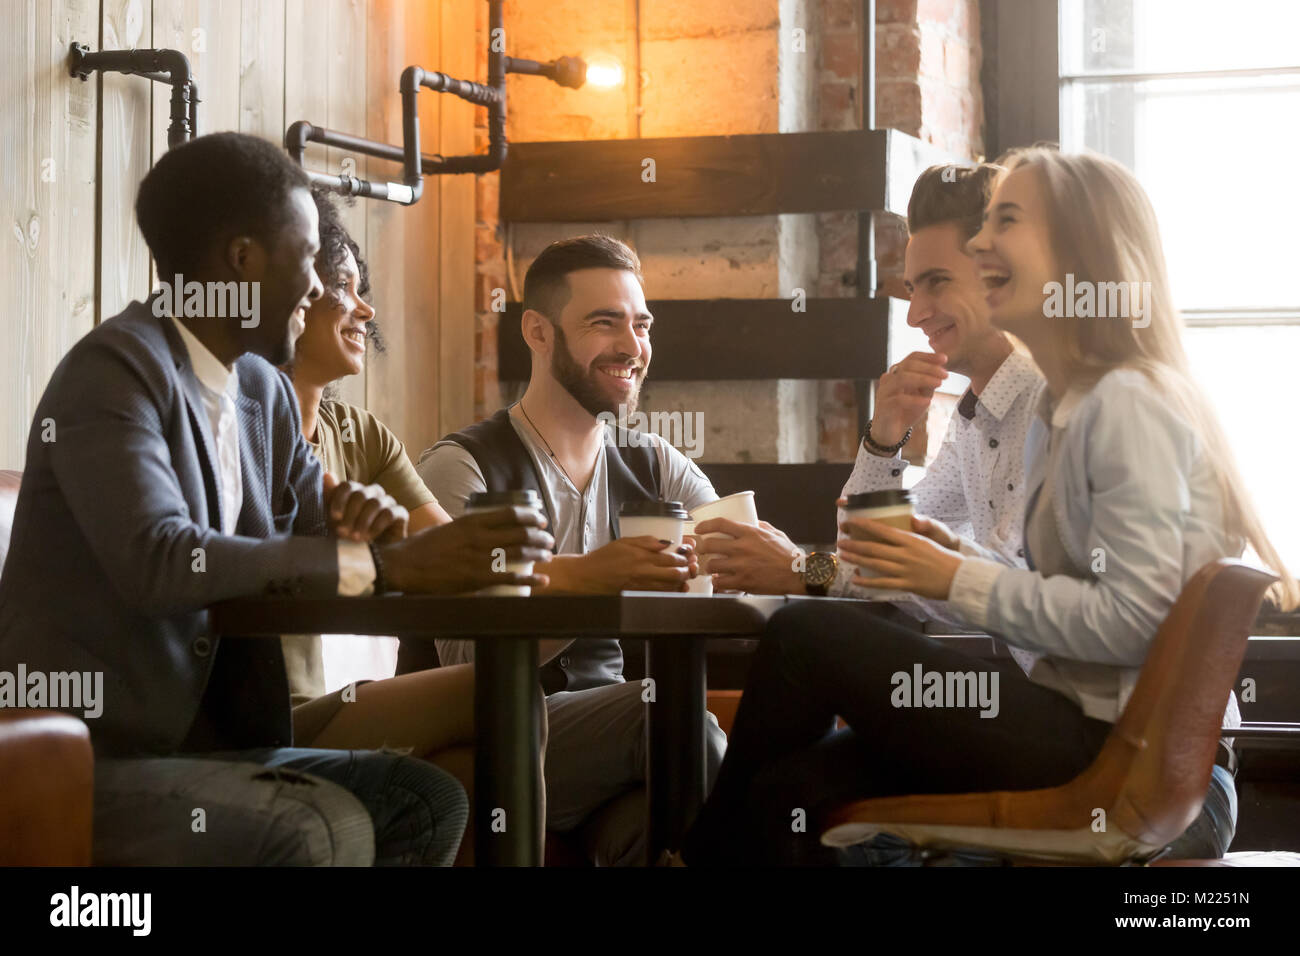 Jeunes amis multiraciale s'amusant rire boire du café dans Banque D'Images